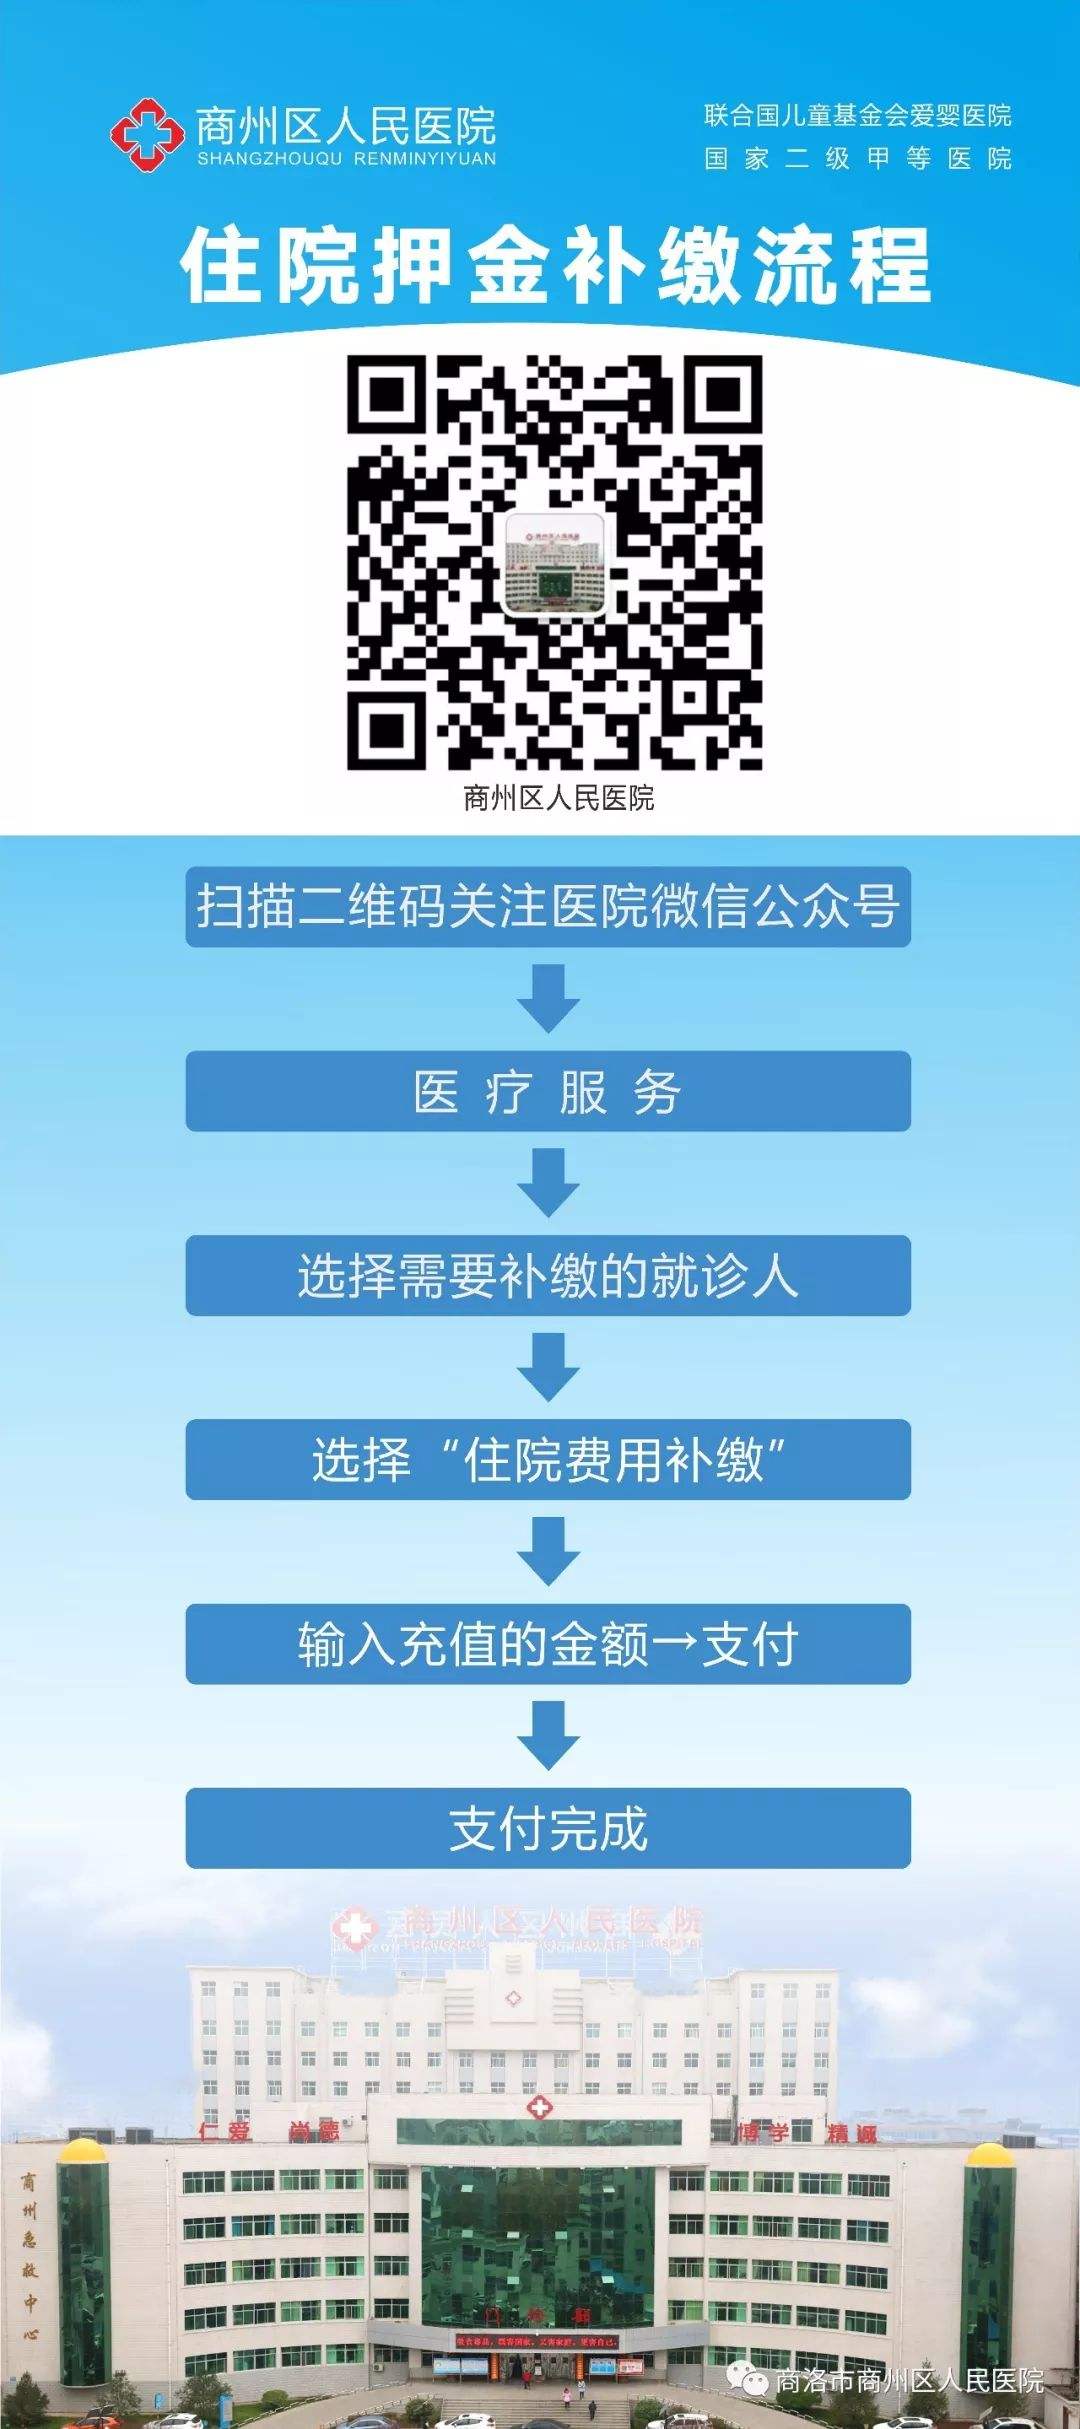 关于北京儿研所专家跑腿代预约，在线客服为您解答的信息